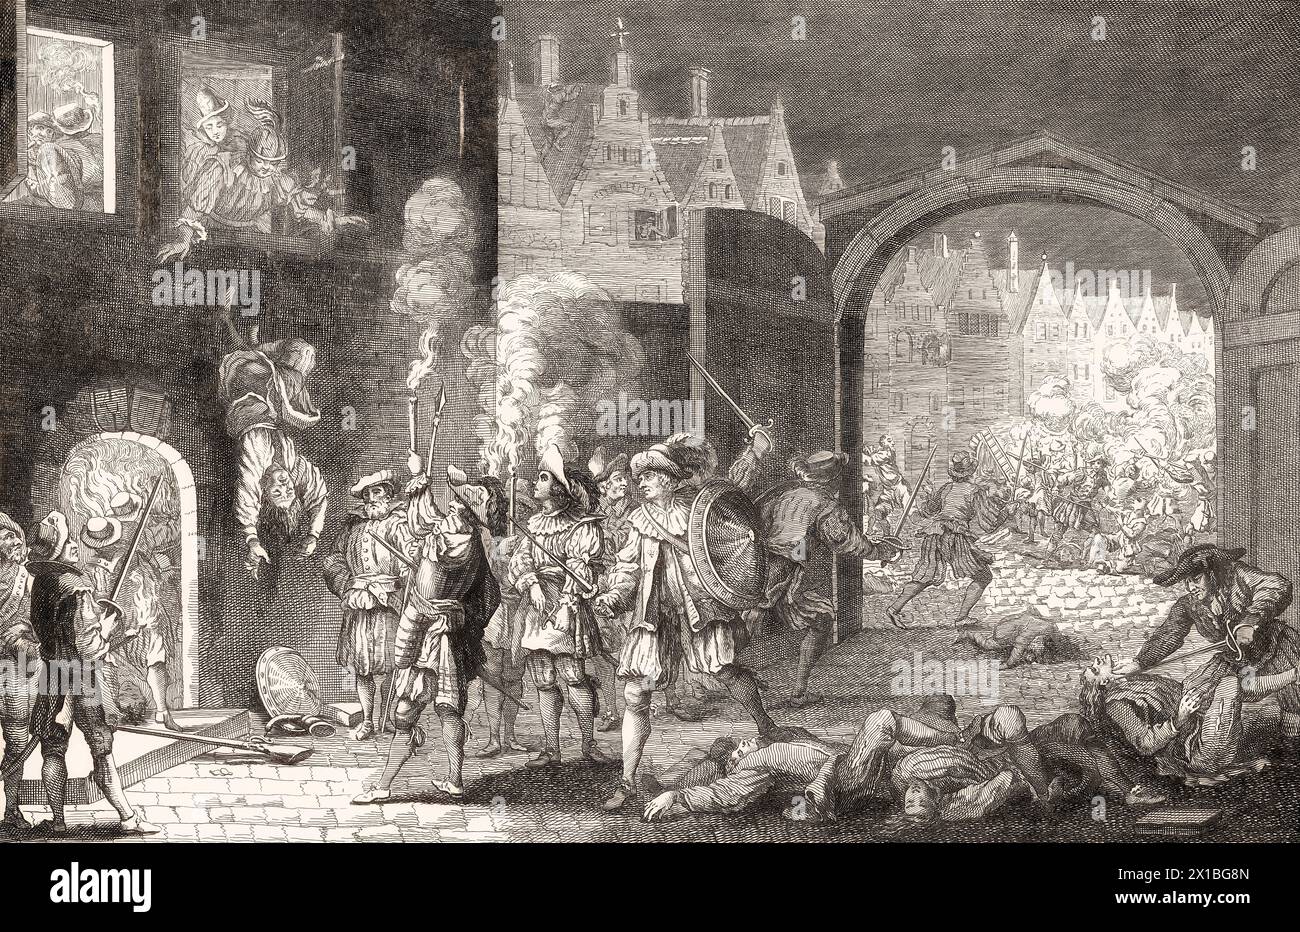 Le Massacre du jour de Barthélemy, Paris, guerres françaises de religion, 1572 Banque D'Images